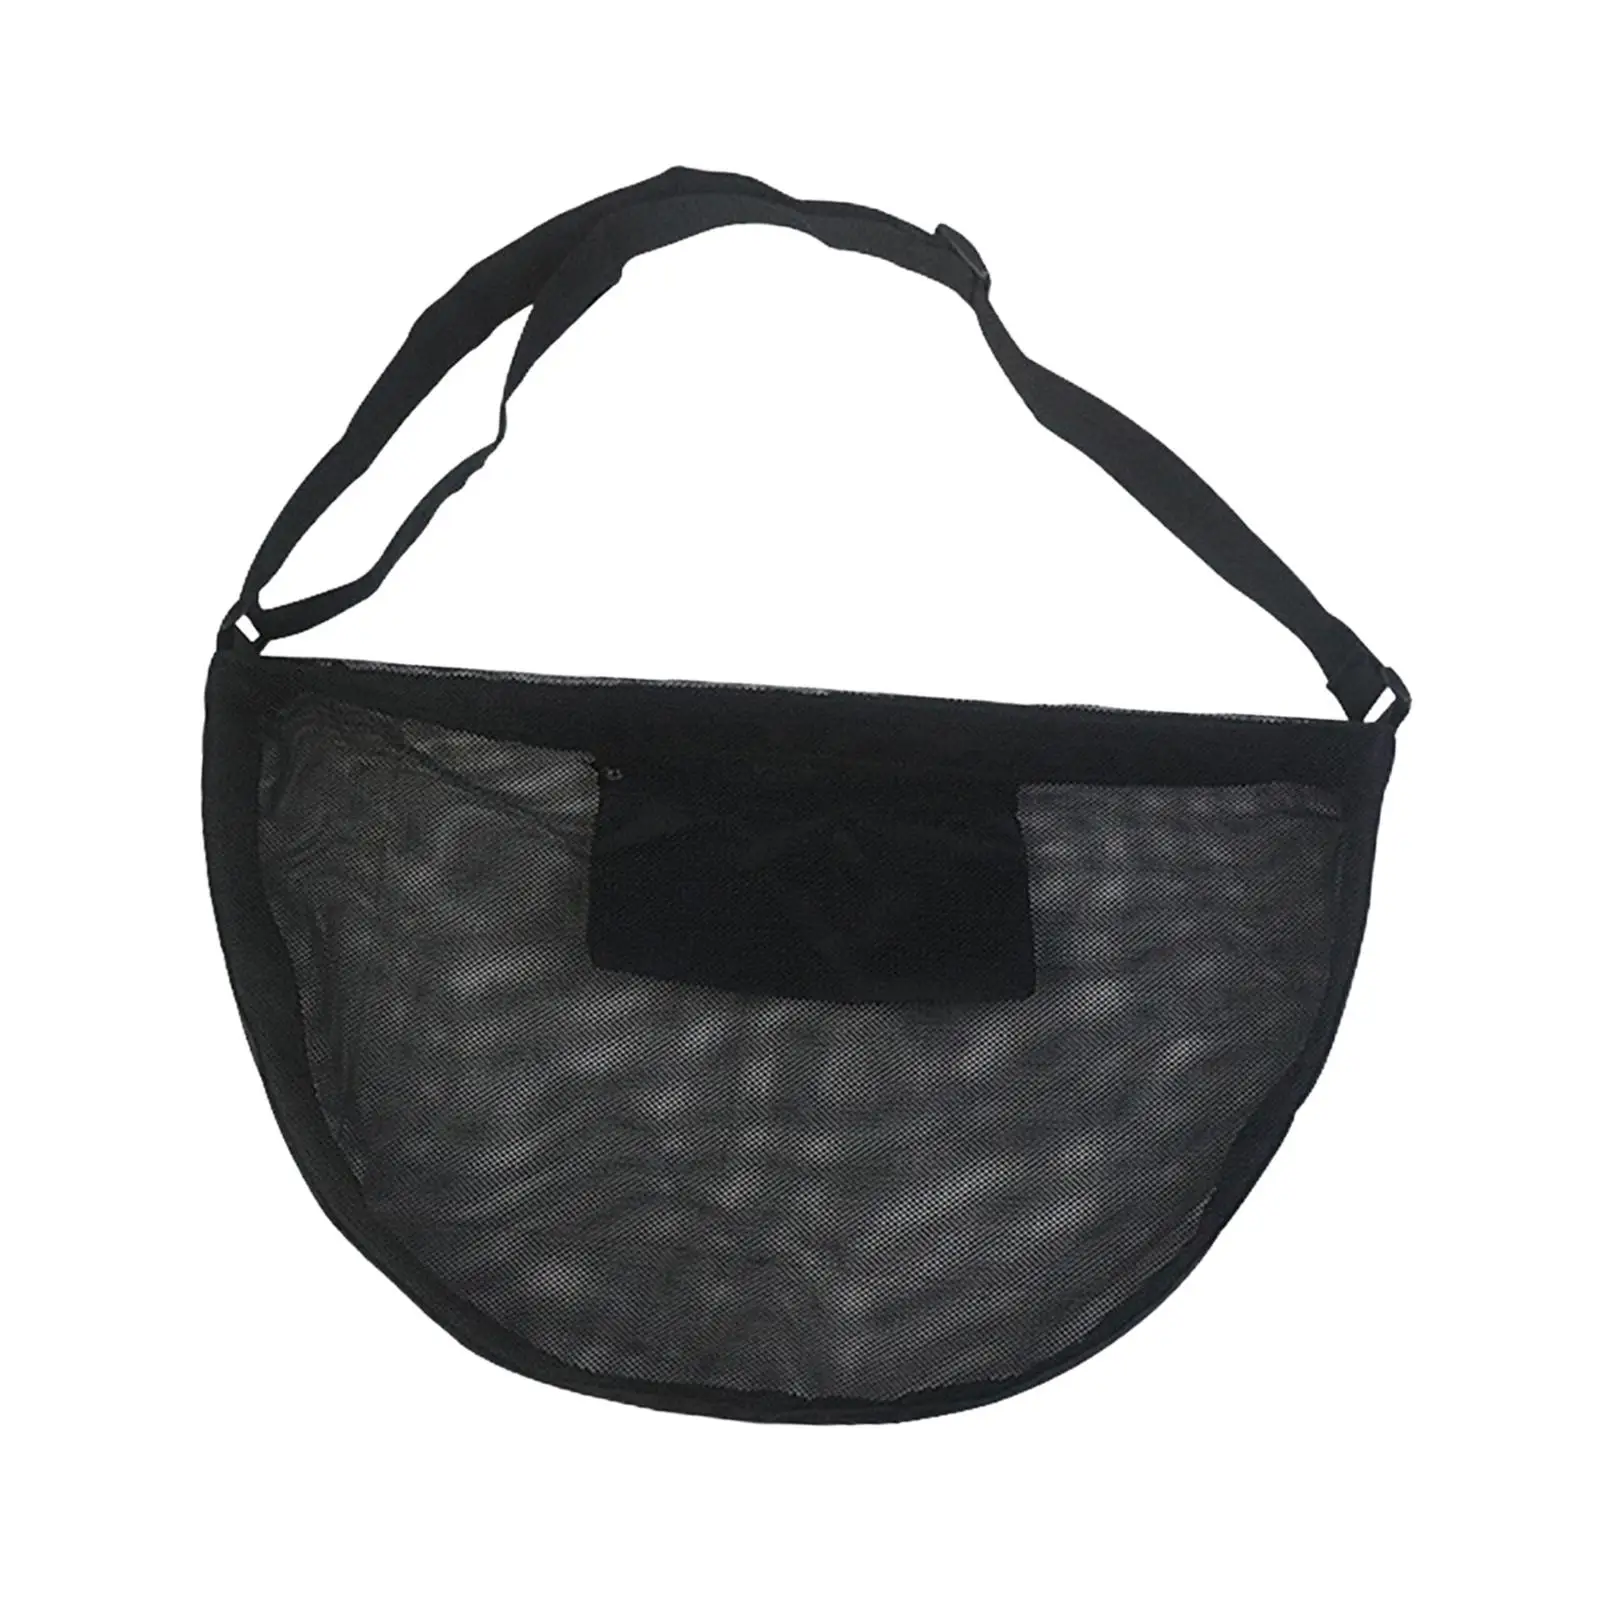 Basketball Shoulder Bag Tote Waterproof Volleyball Ball Storage Bag Basketball Mesh Bag for Softball Volleyball Football